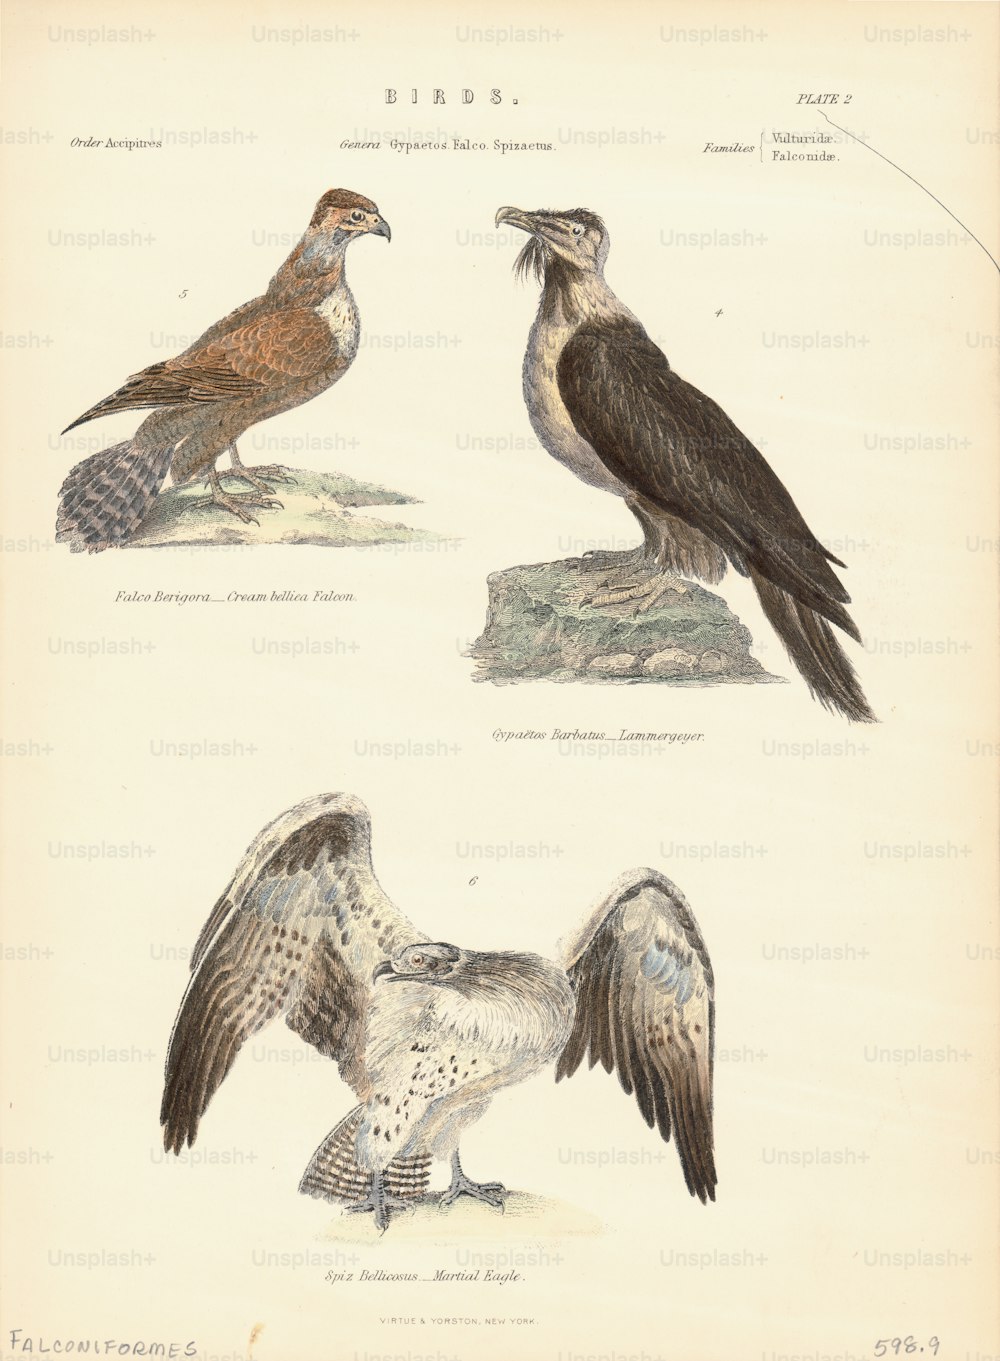 昼行性の猛禽類で構成された鷹目(Falconiformes)の鳥類のカラーイラスト。マーシャルイーグルとブラウンファルコン。(写真提供:Kean Collection/Archive Photos/Getty Images)